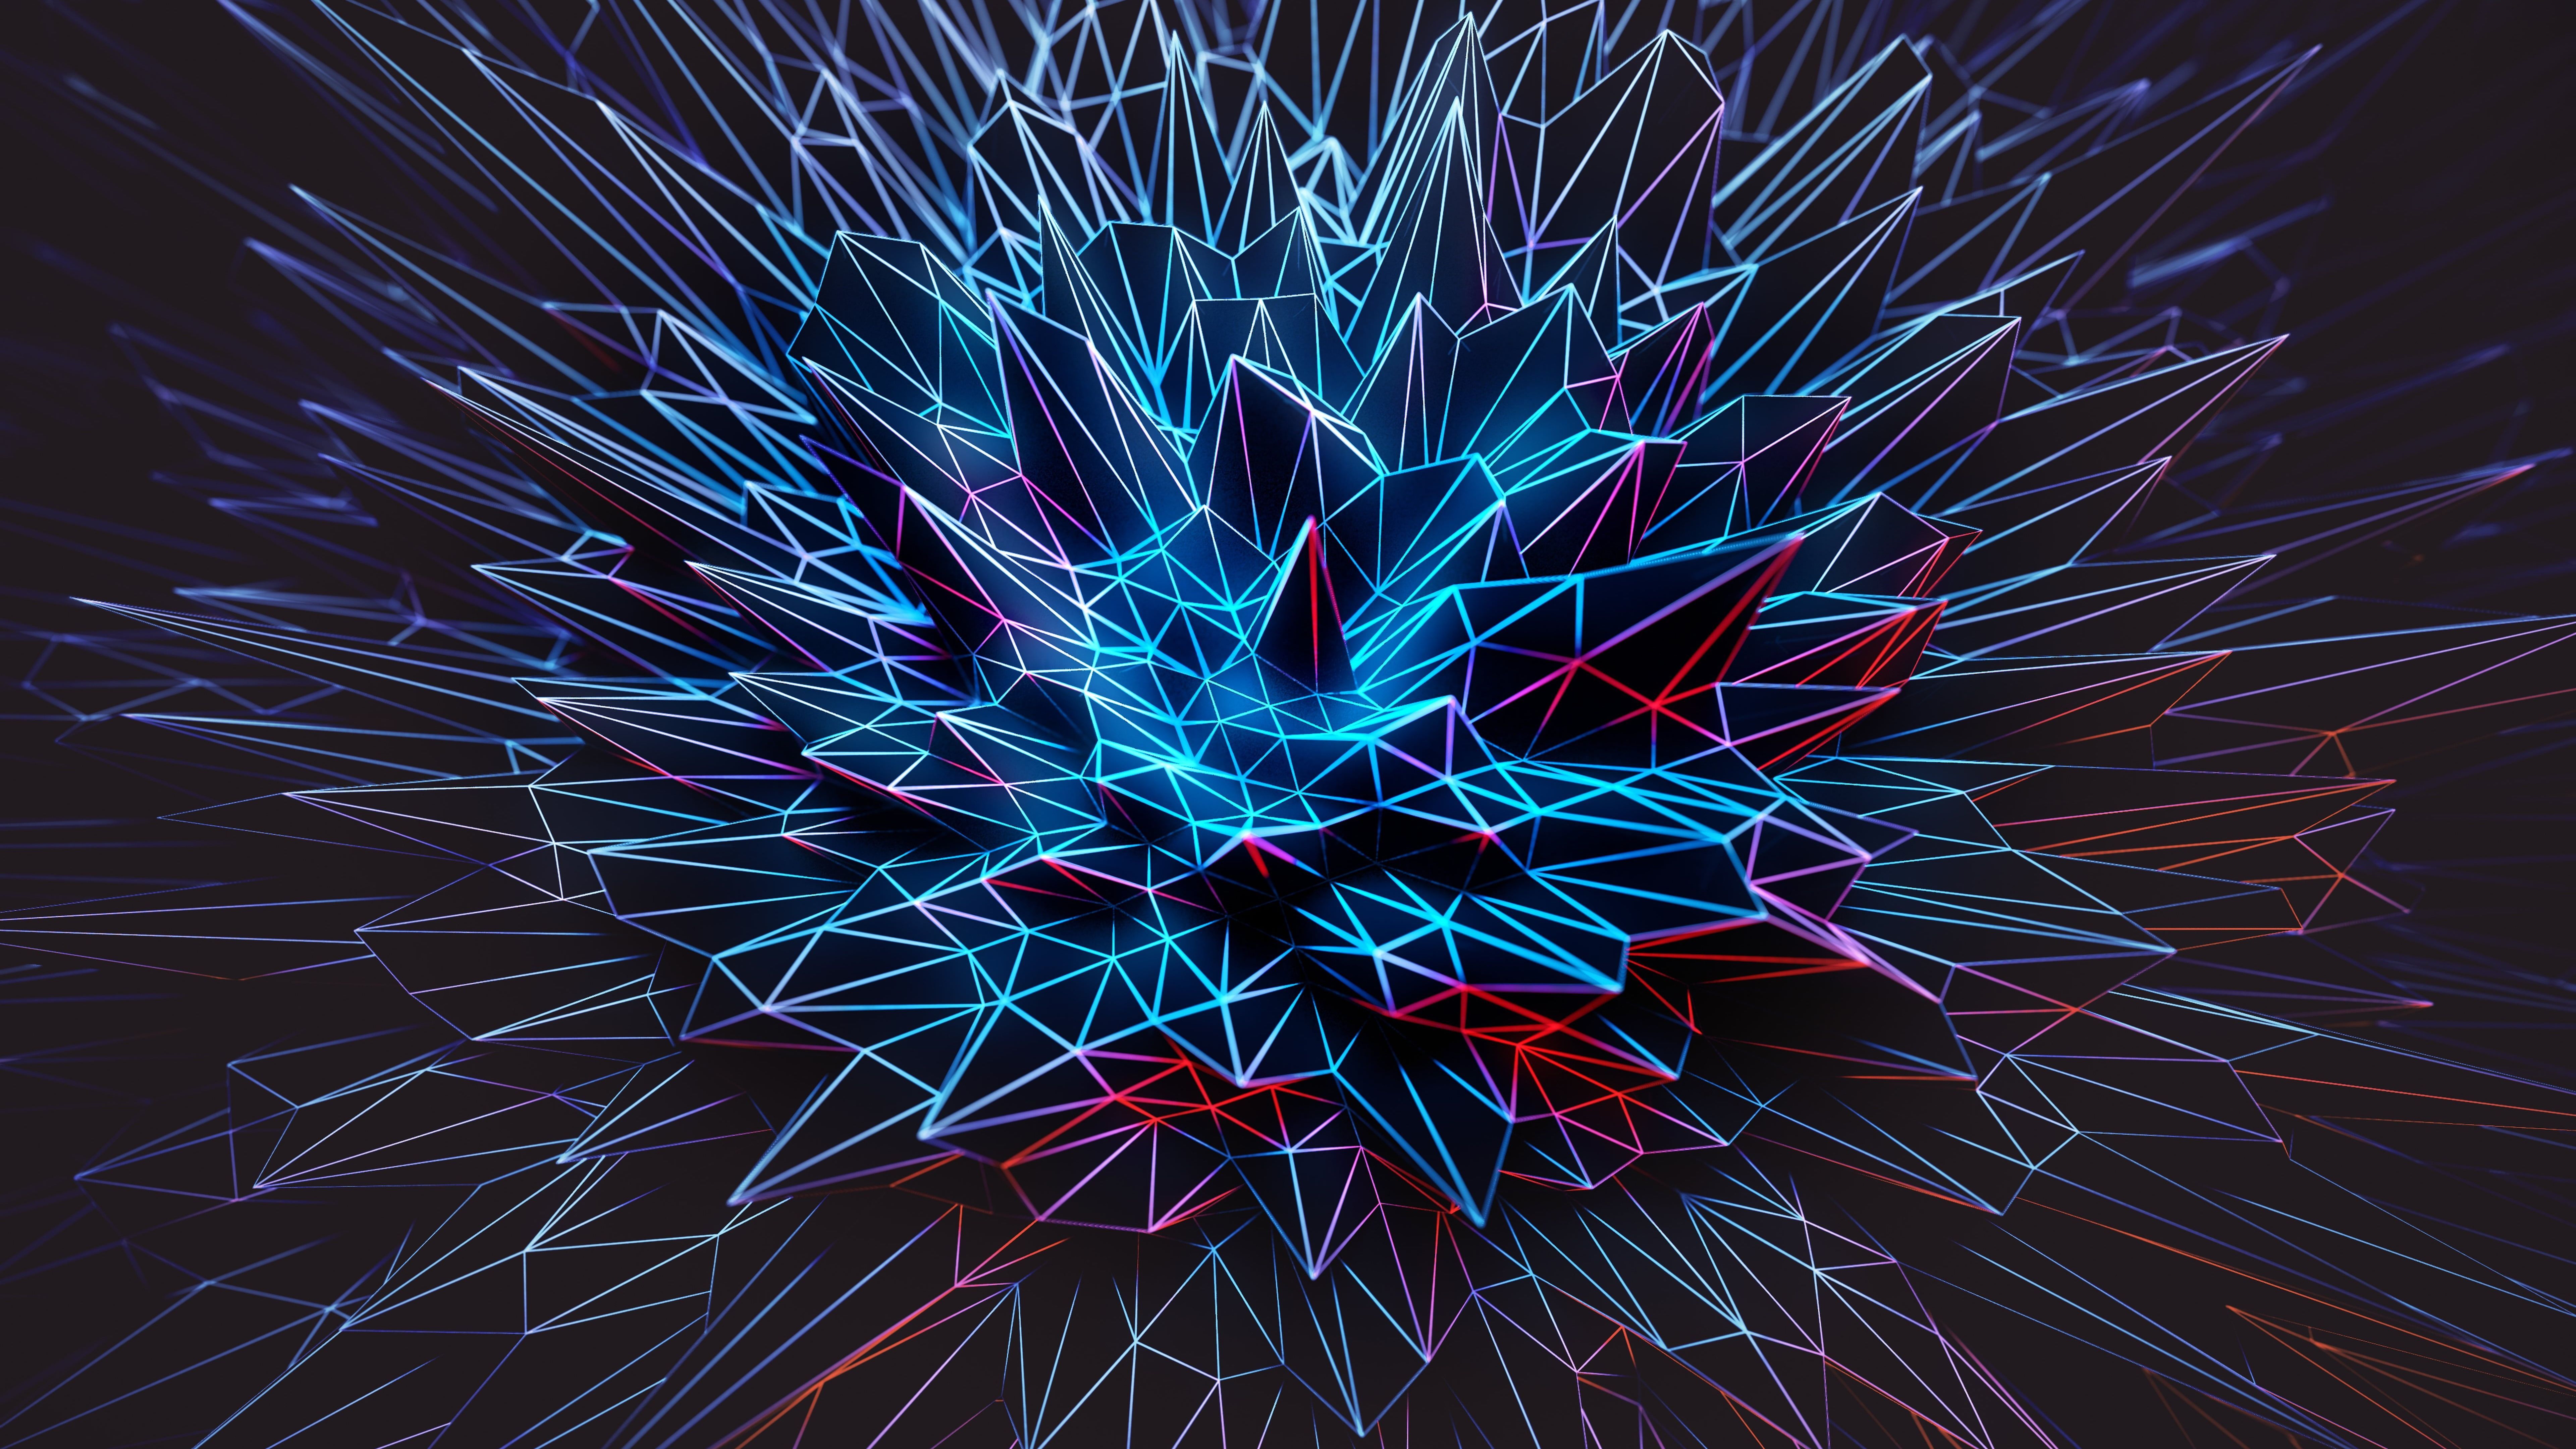 8k uhd d digital art abstract art k #polygonal #spike #spikes #blue electric blue #darkness #graphics graphic. Artistic wallpaper, Dark wallpaper, Digital art